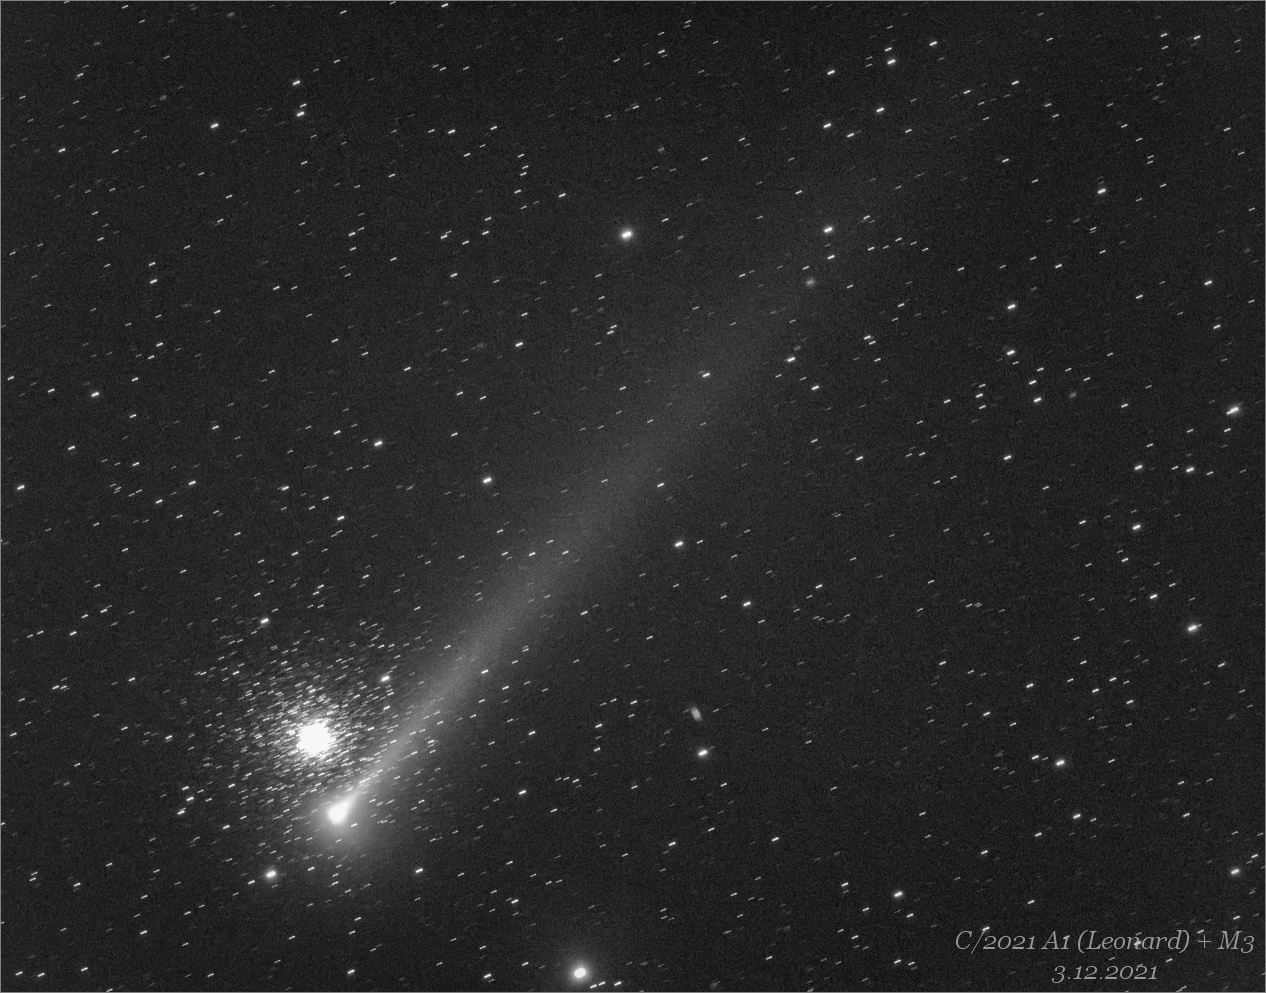 kometa  C/2021 A (Leonard)